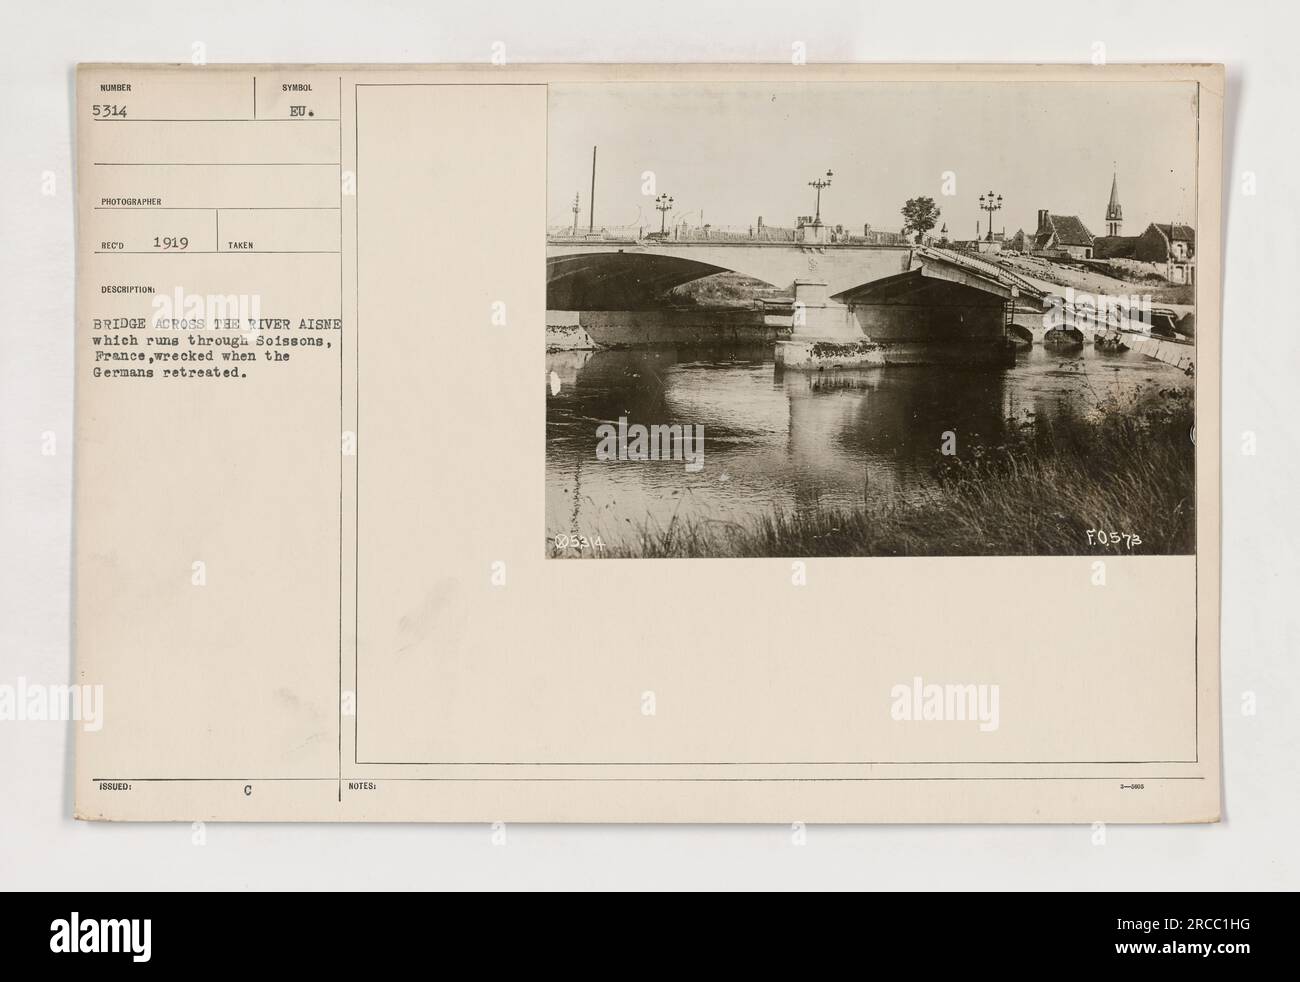 Bild: Die Ku-Brücke in Soissons, Frankreich, wurde nach der Zerstörung im Ersten Weltkrieg in Ruinen gesehen Dieses Foto wurde 1919 von CD aufgenommen und zeigt die Nachwirkungen des deutschen Rückzugs. Die Brücke, die den Fluss Aisne umspannte, ist nun in einem Zustand der Zerstörung und des Zusammenbruchs. (Herausgegeben als Hinweis F0573) Stockfoto